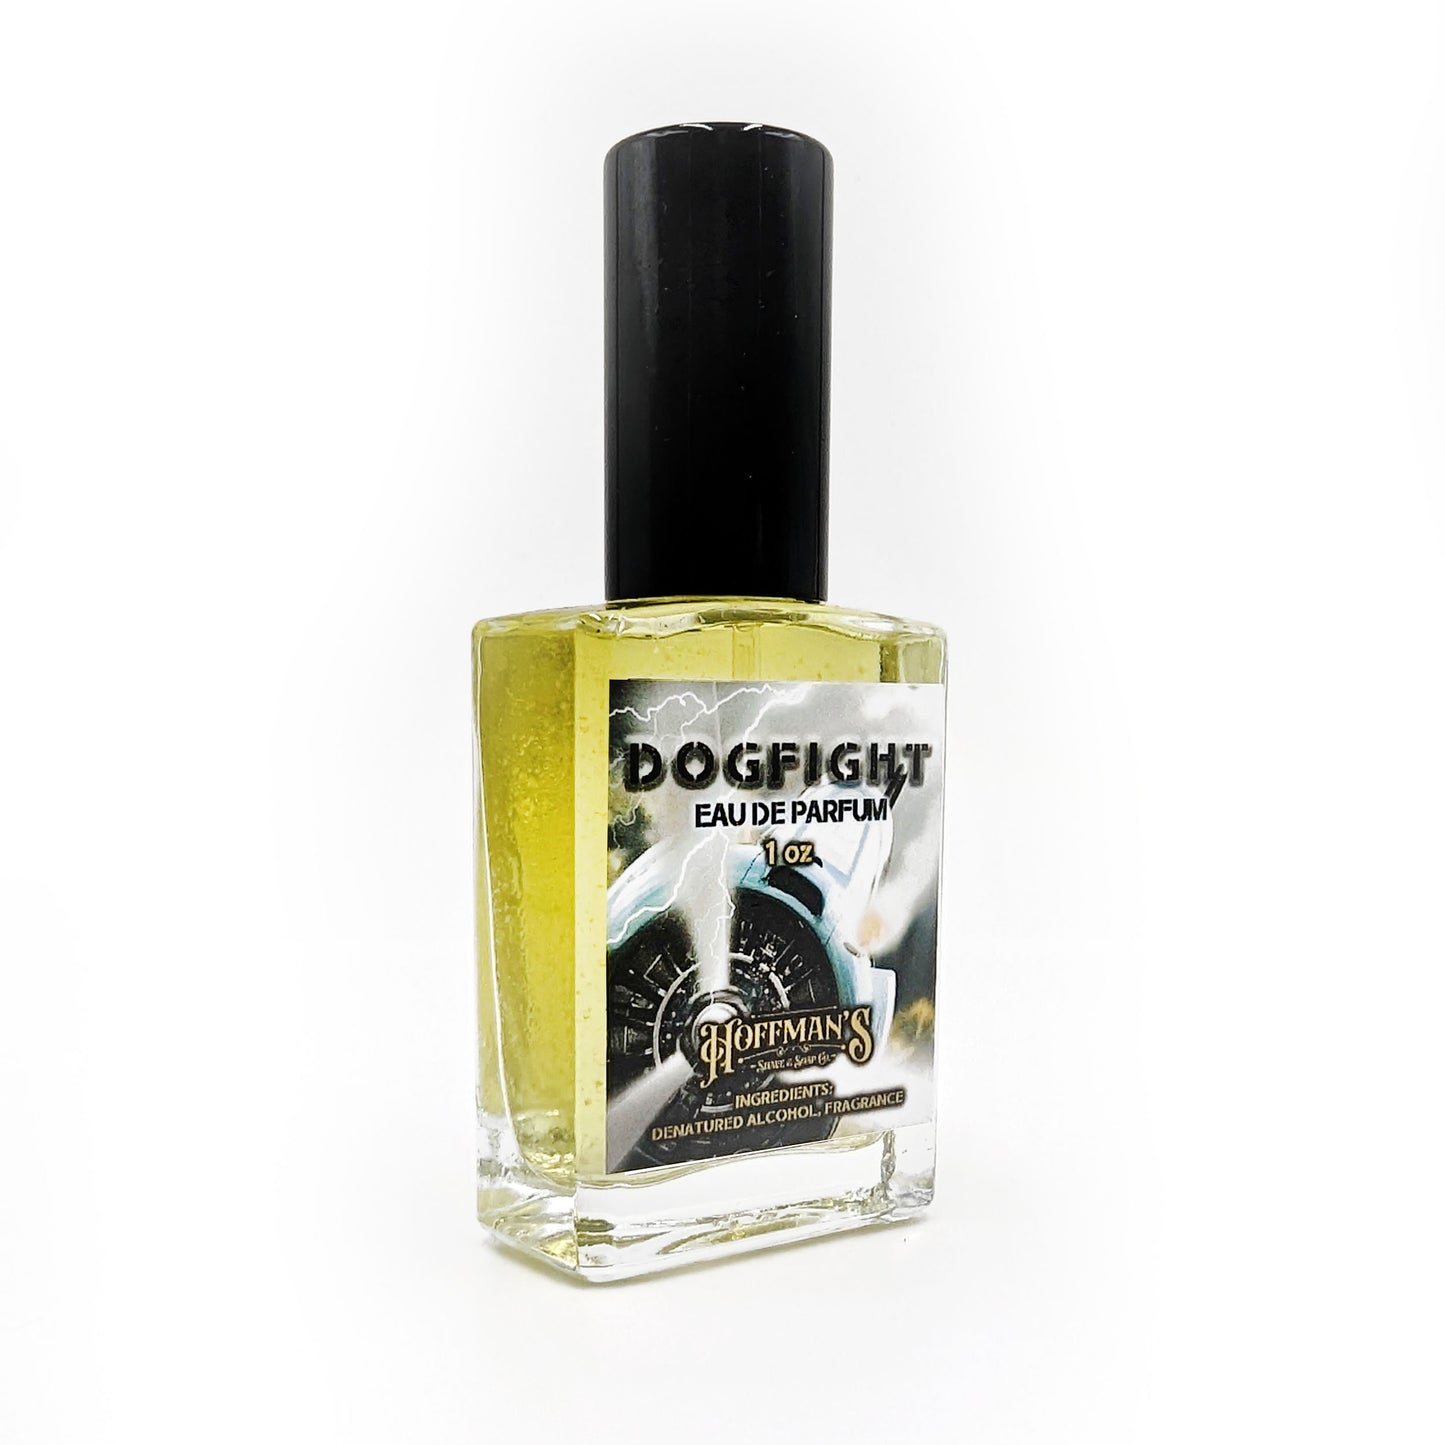 Dogfight EDP 1oz Parfum Extrait Cologne